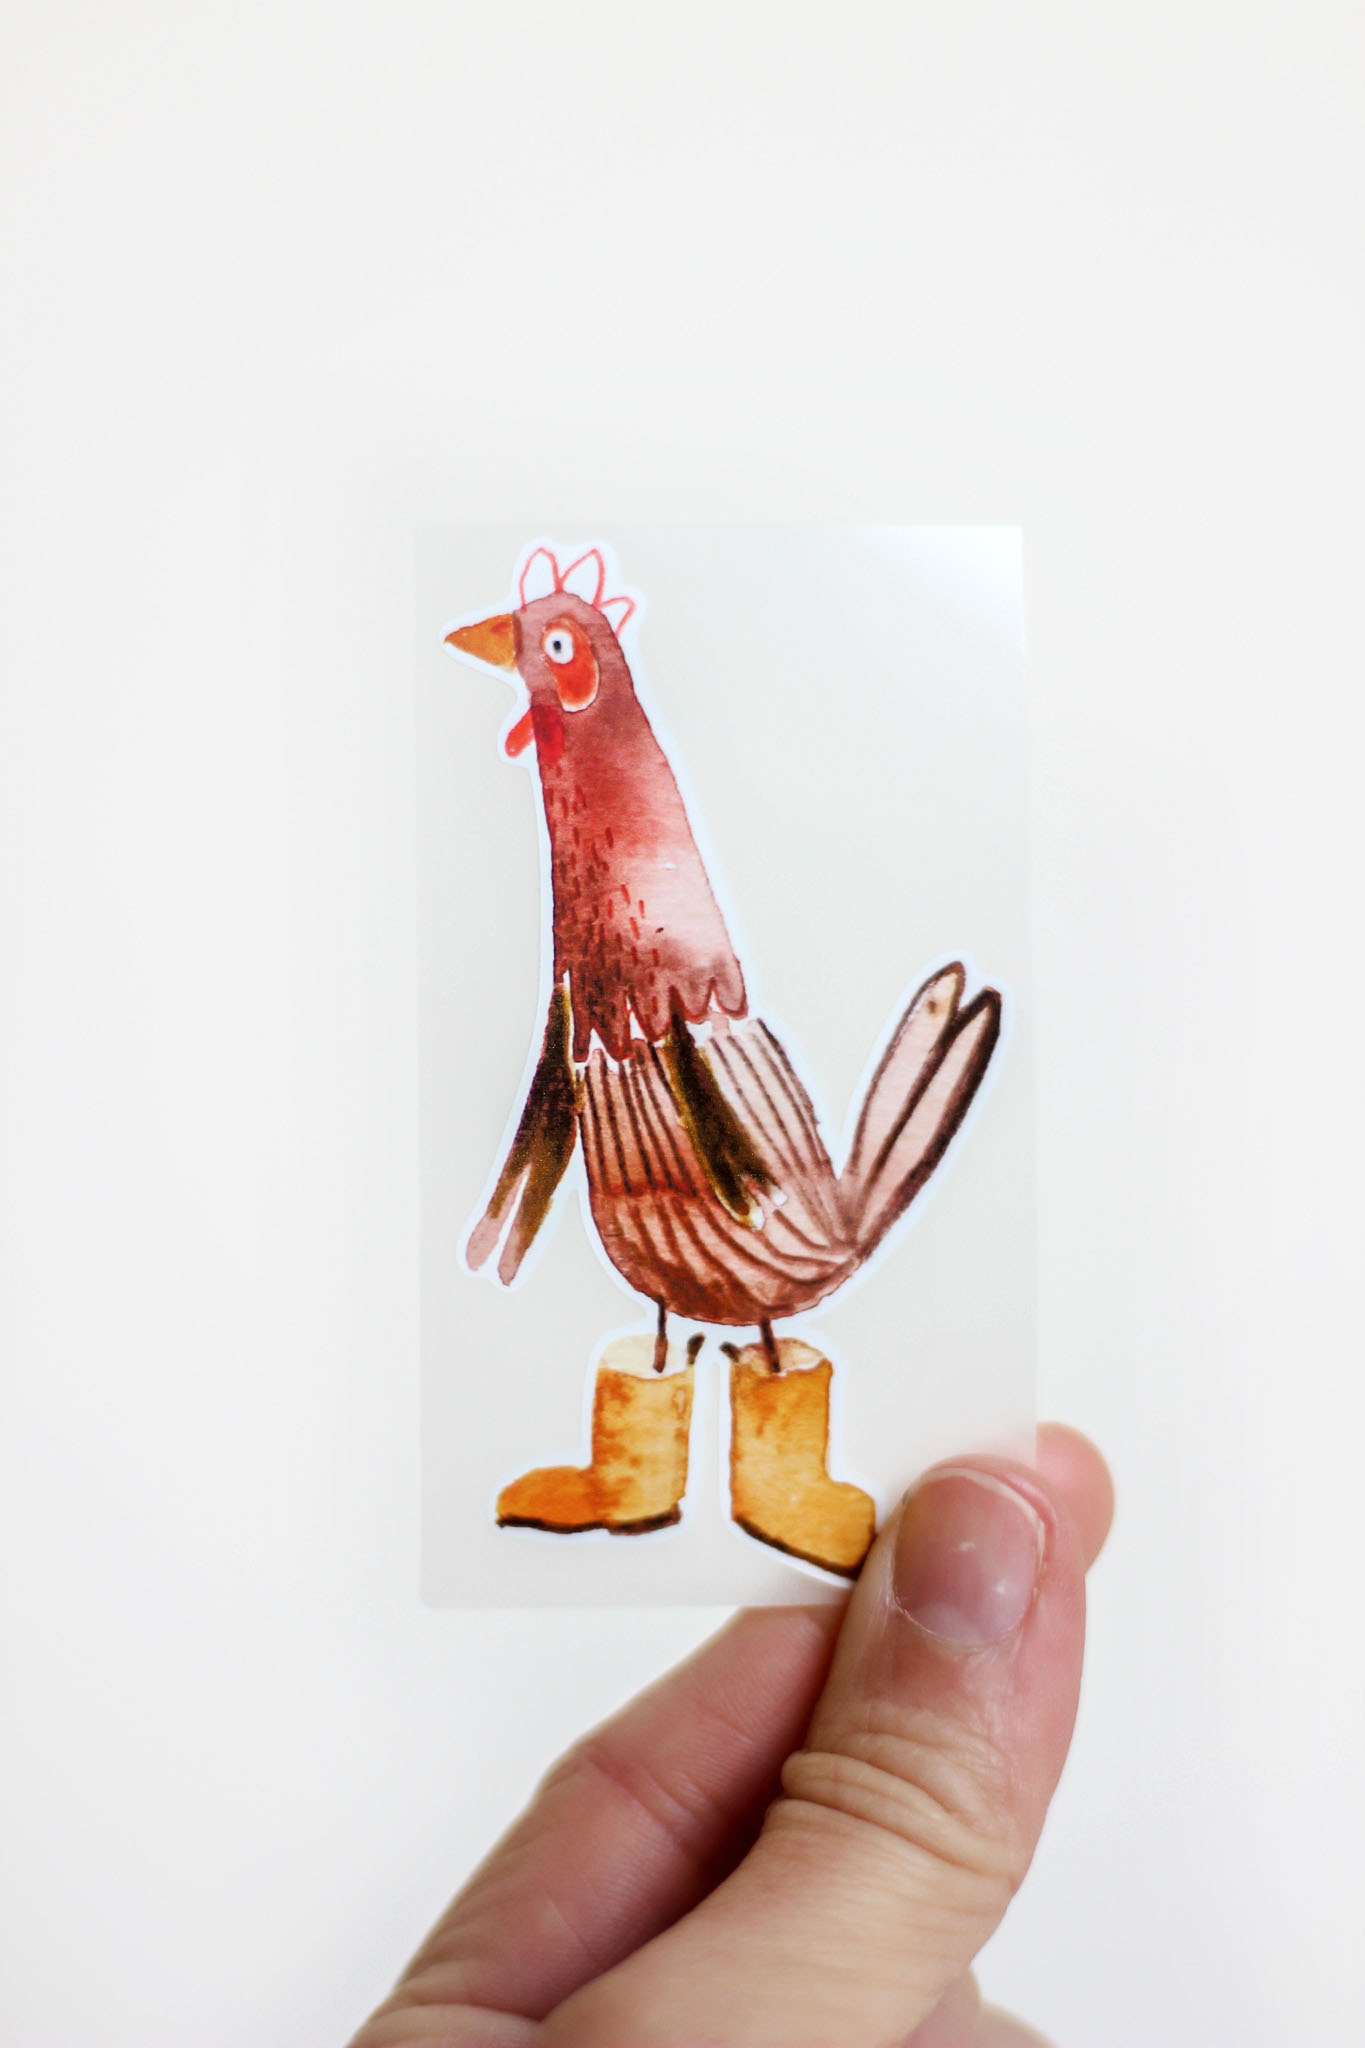 Bügelbild "Huhn mit Gummistiefel" von Halfbird